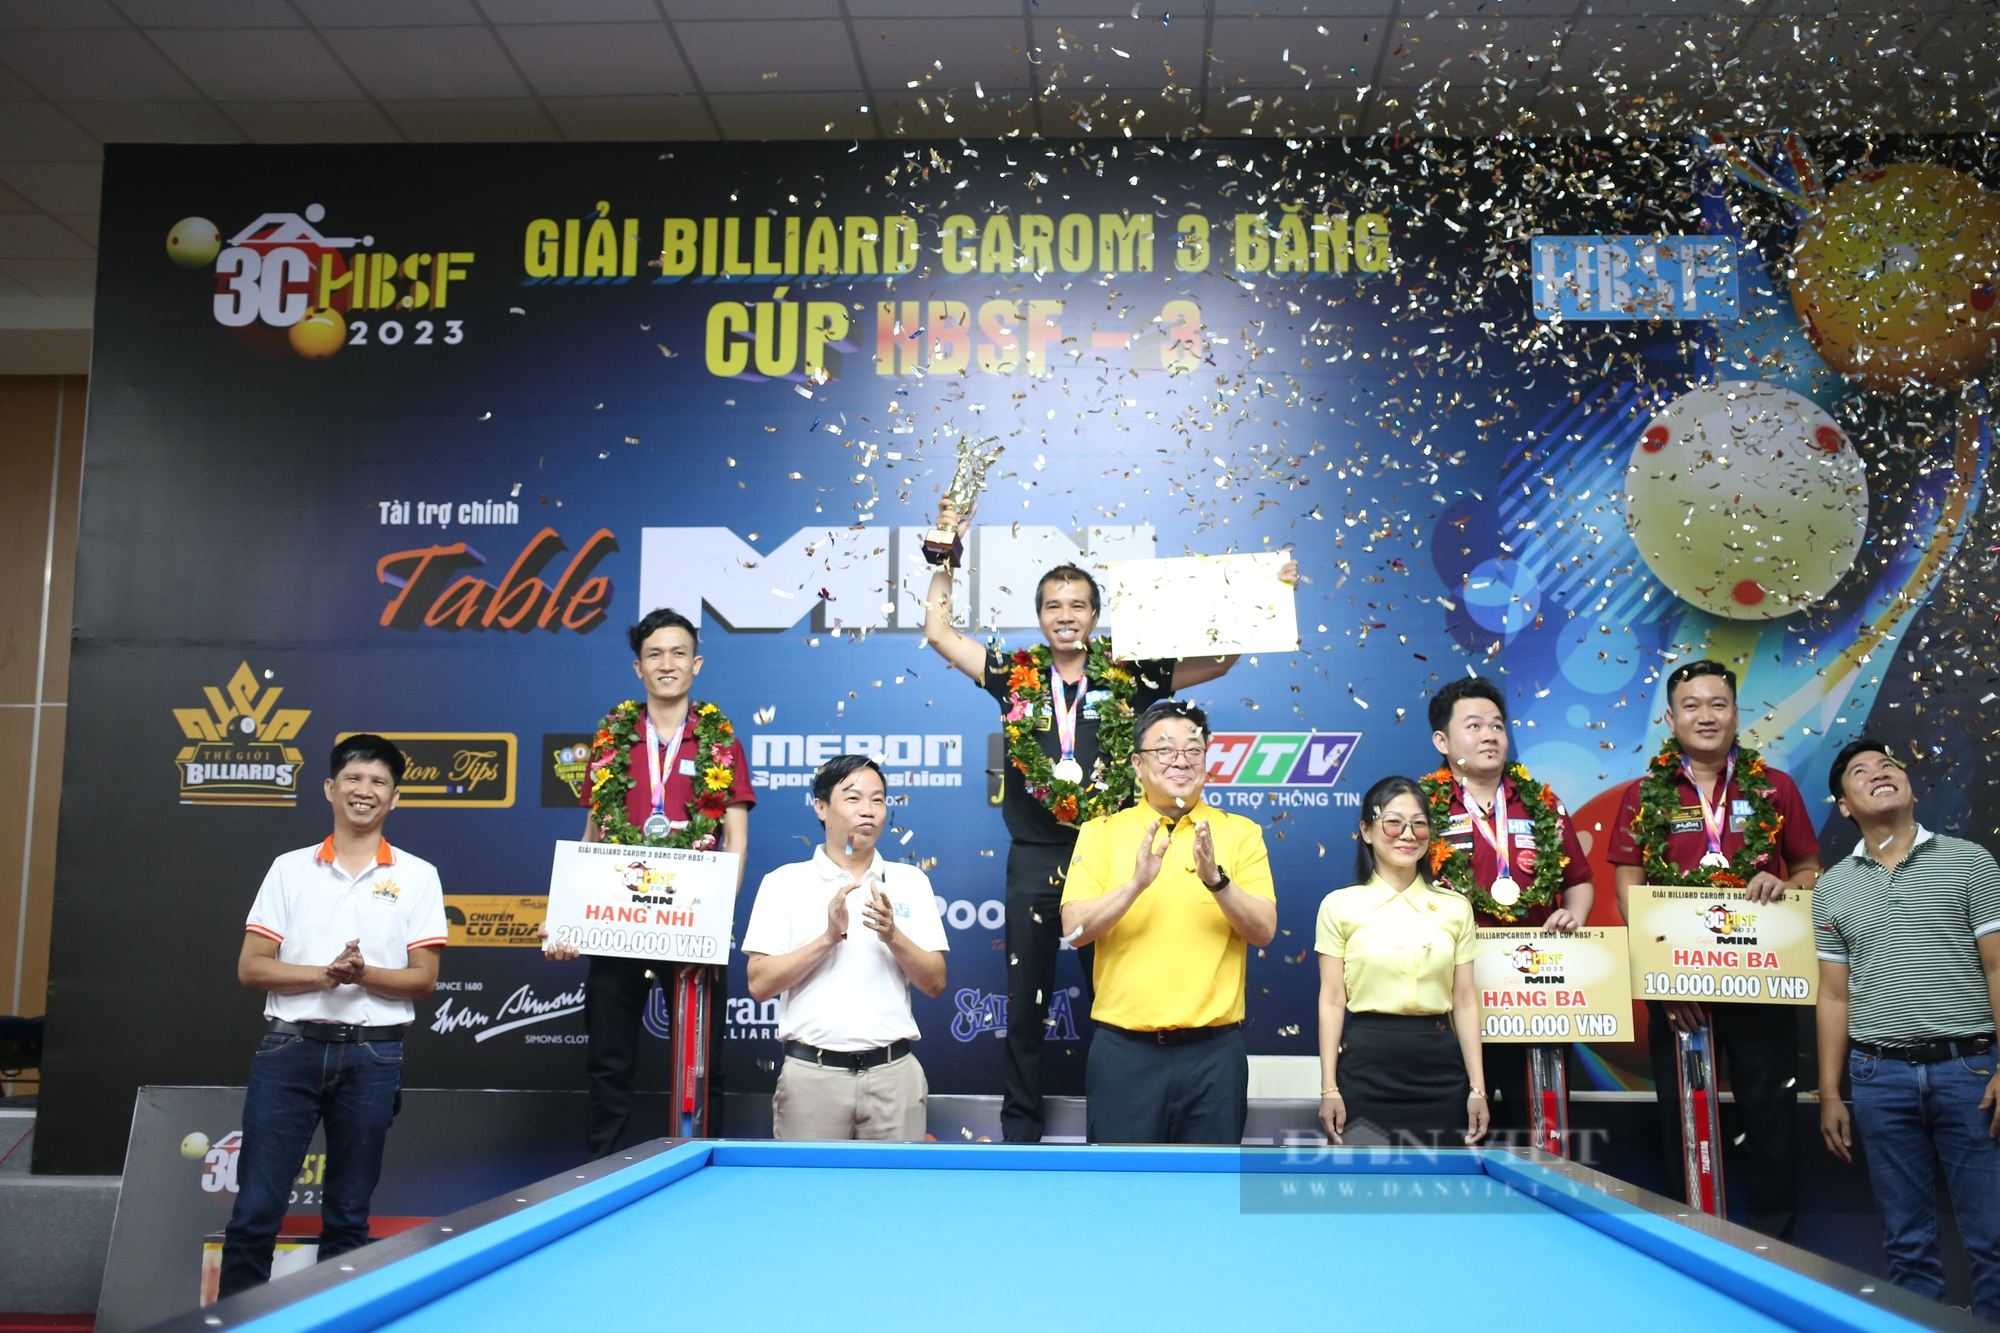 Ngược dòng trước học trò, Trần Quyết Chiến lên ngôi vô địch Giải Billiard carom 3 băng HBSF Cup - Ảnh 5.